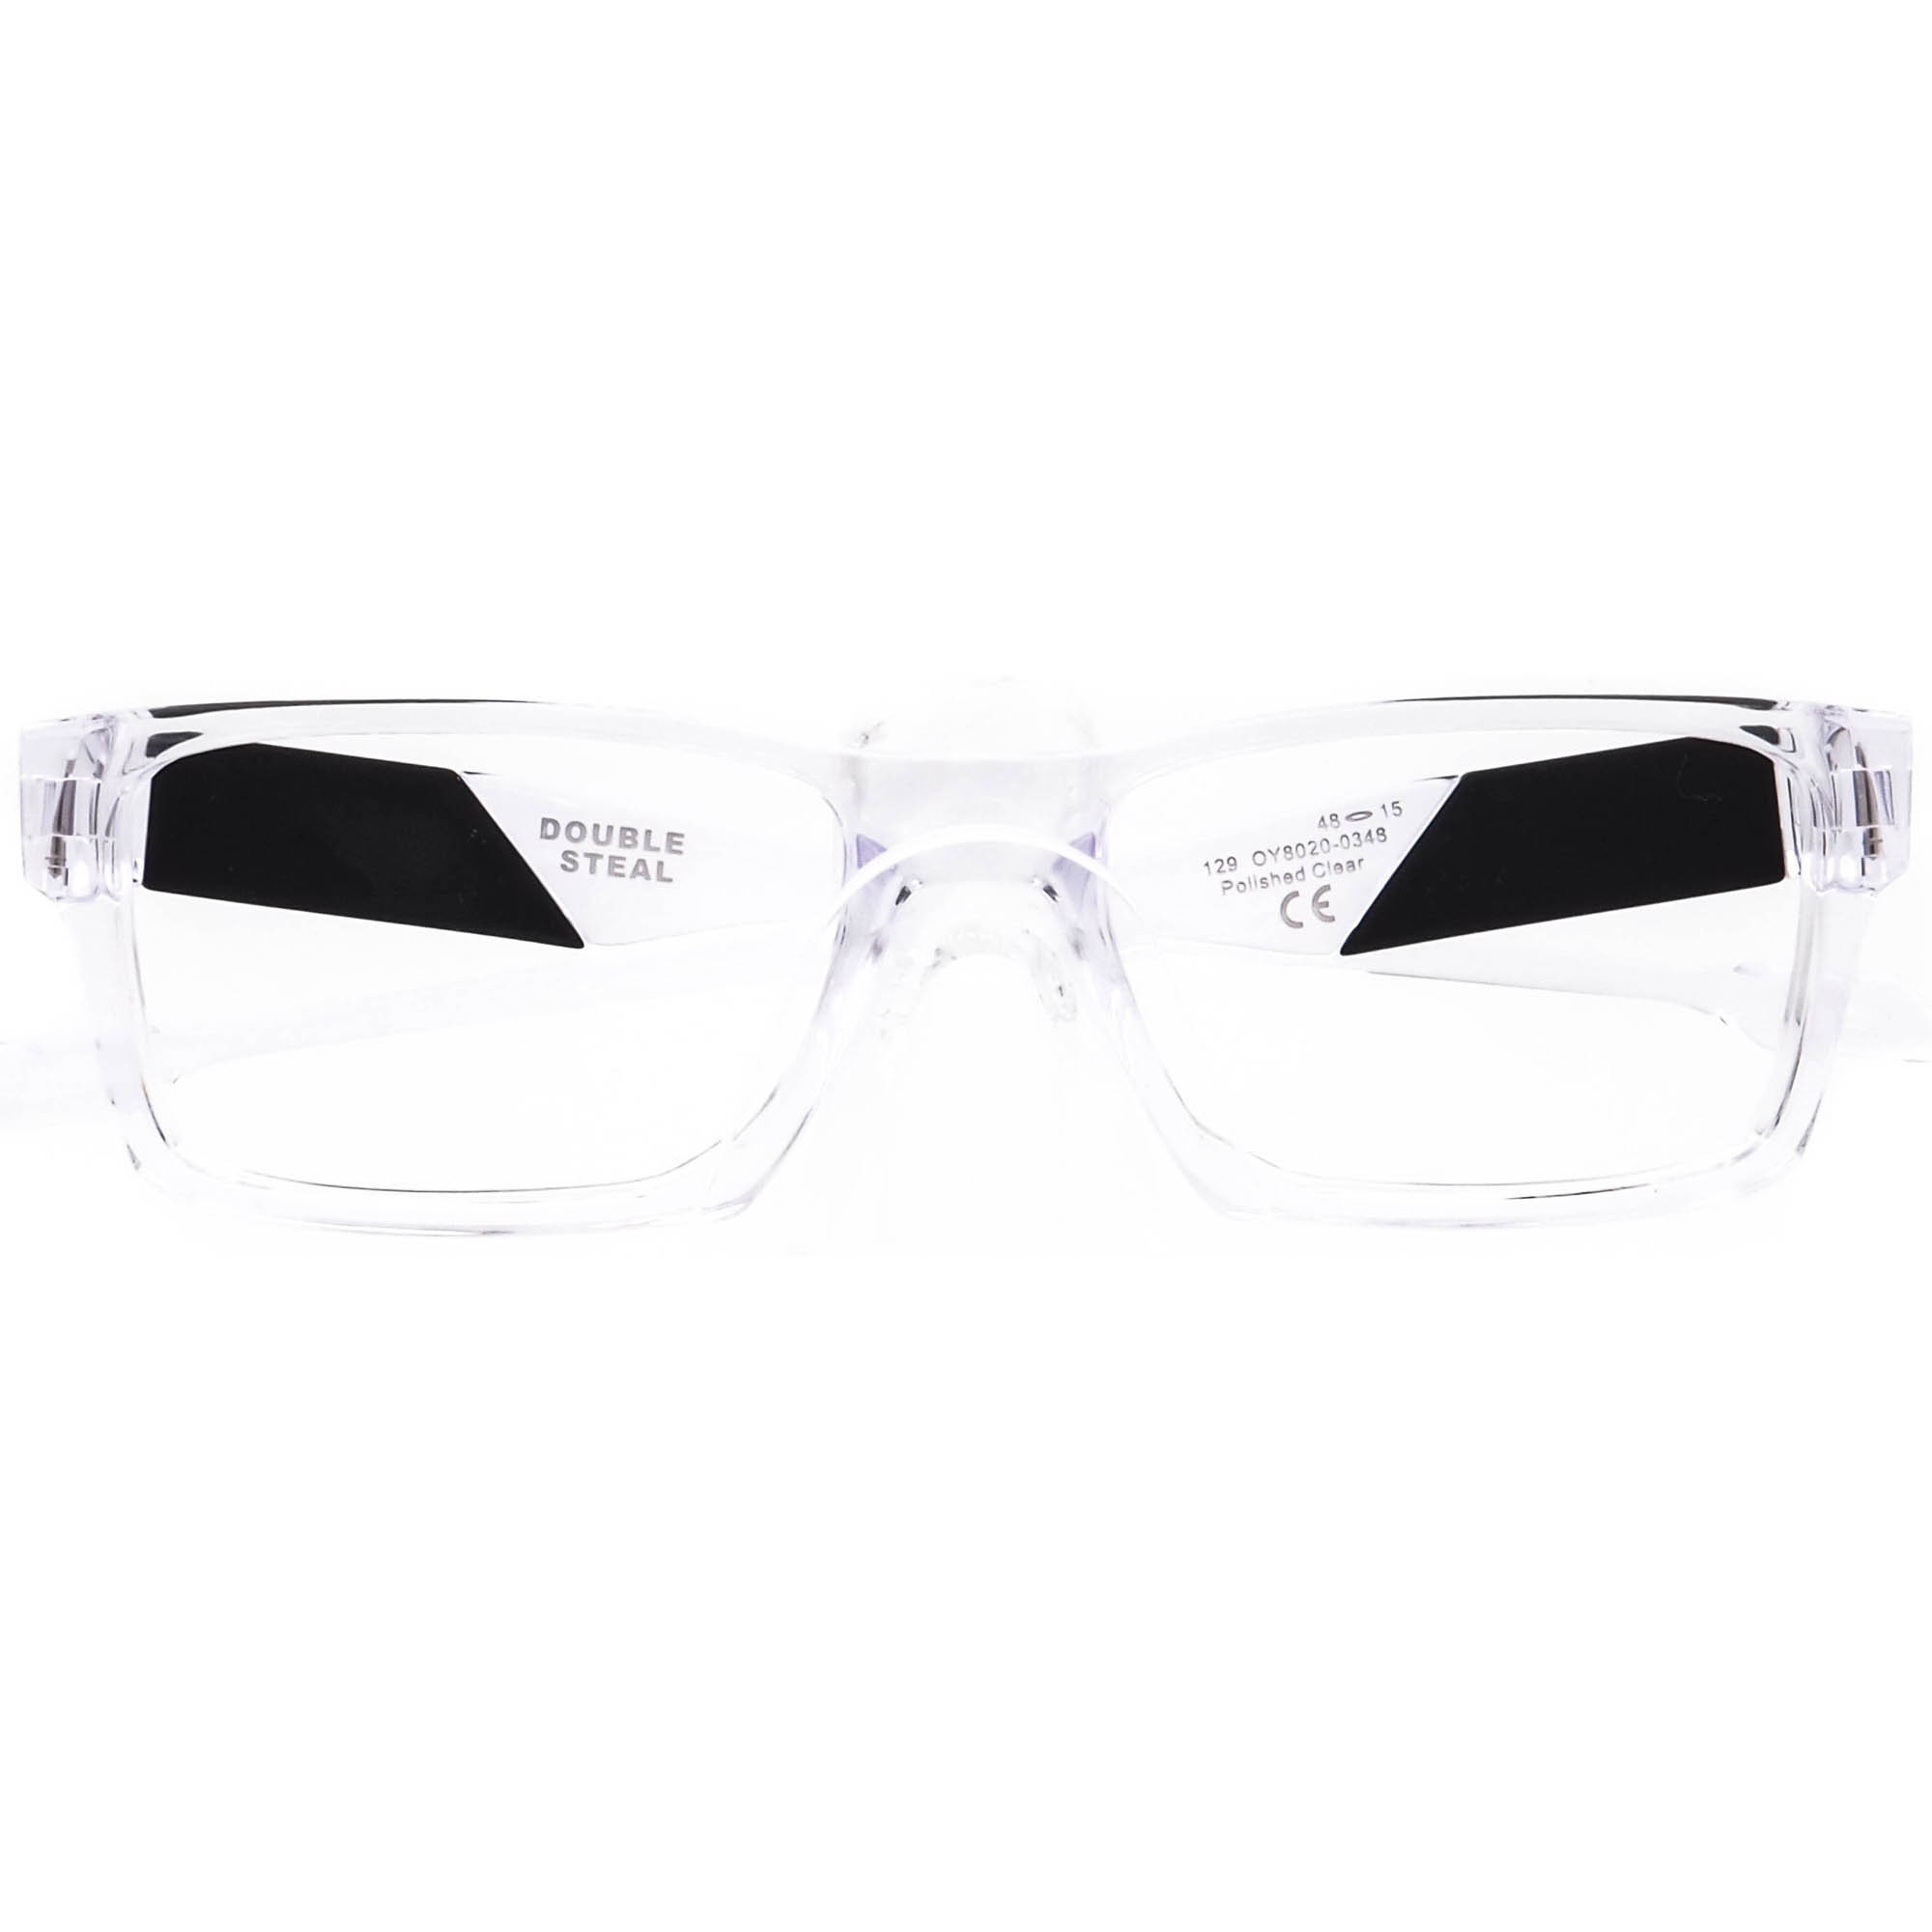 Oakley Small Eyeglasses OY8020-0348 Double Steel Clear - Etsy